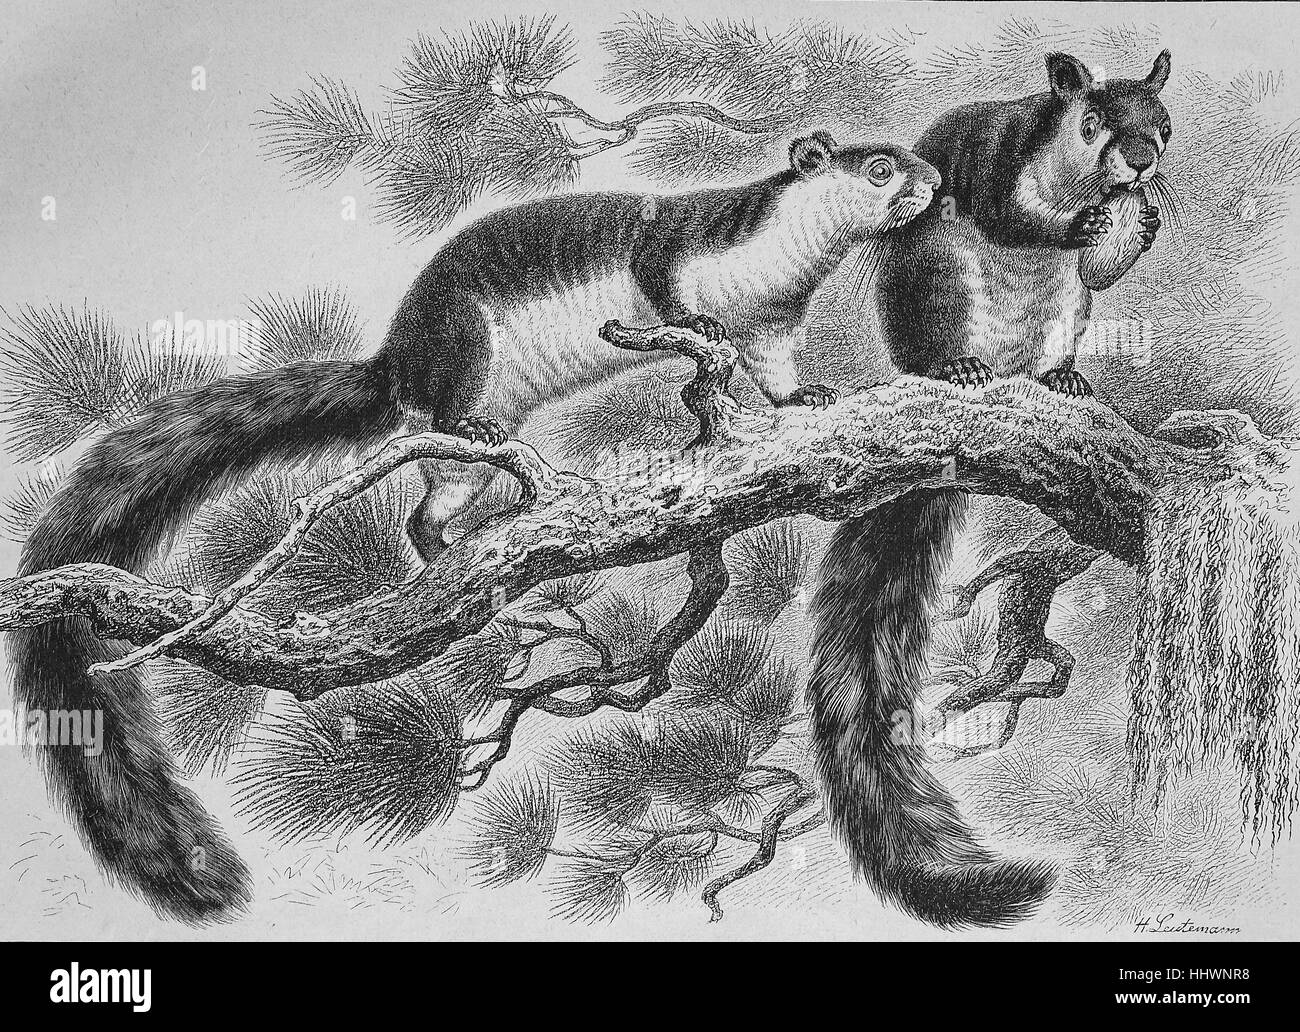 Cavallo scoiattolo siberiano nel giardino zoologico a Dresda, Germania, disegnato da H. Leutemann, immagine storica o illustrazione, pubblicato 1890, digitale migliorata Foto Stock